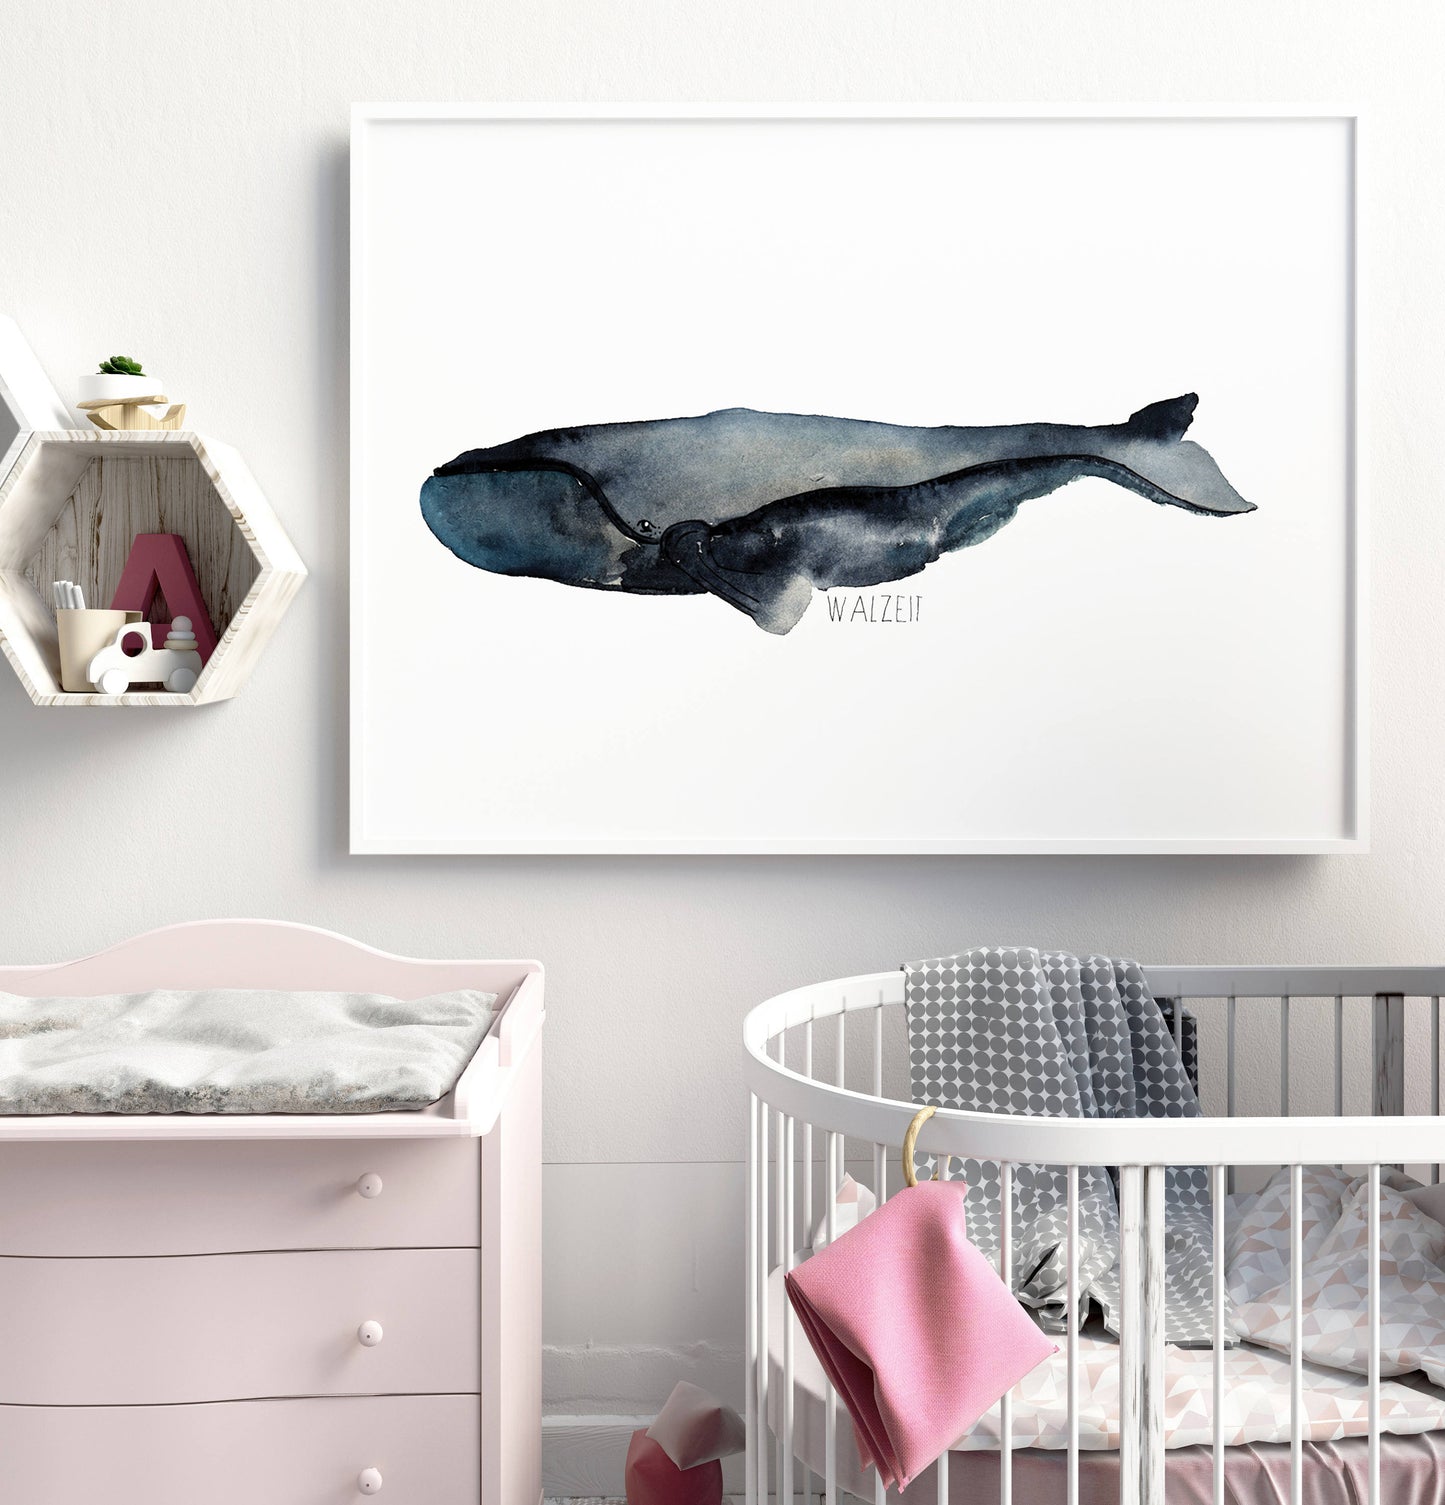 Wal Aquarell Poster Walzeit - Download, Wal Kunstdruck, Kinderzimmer Bilder, Babyzimmer Bilder Tiere, Wal Poster, Skandinavisch, Meerestiere